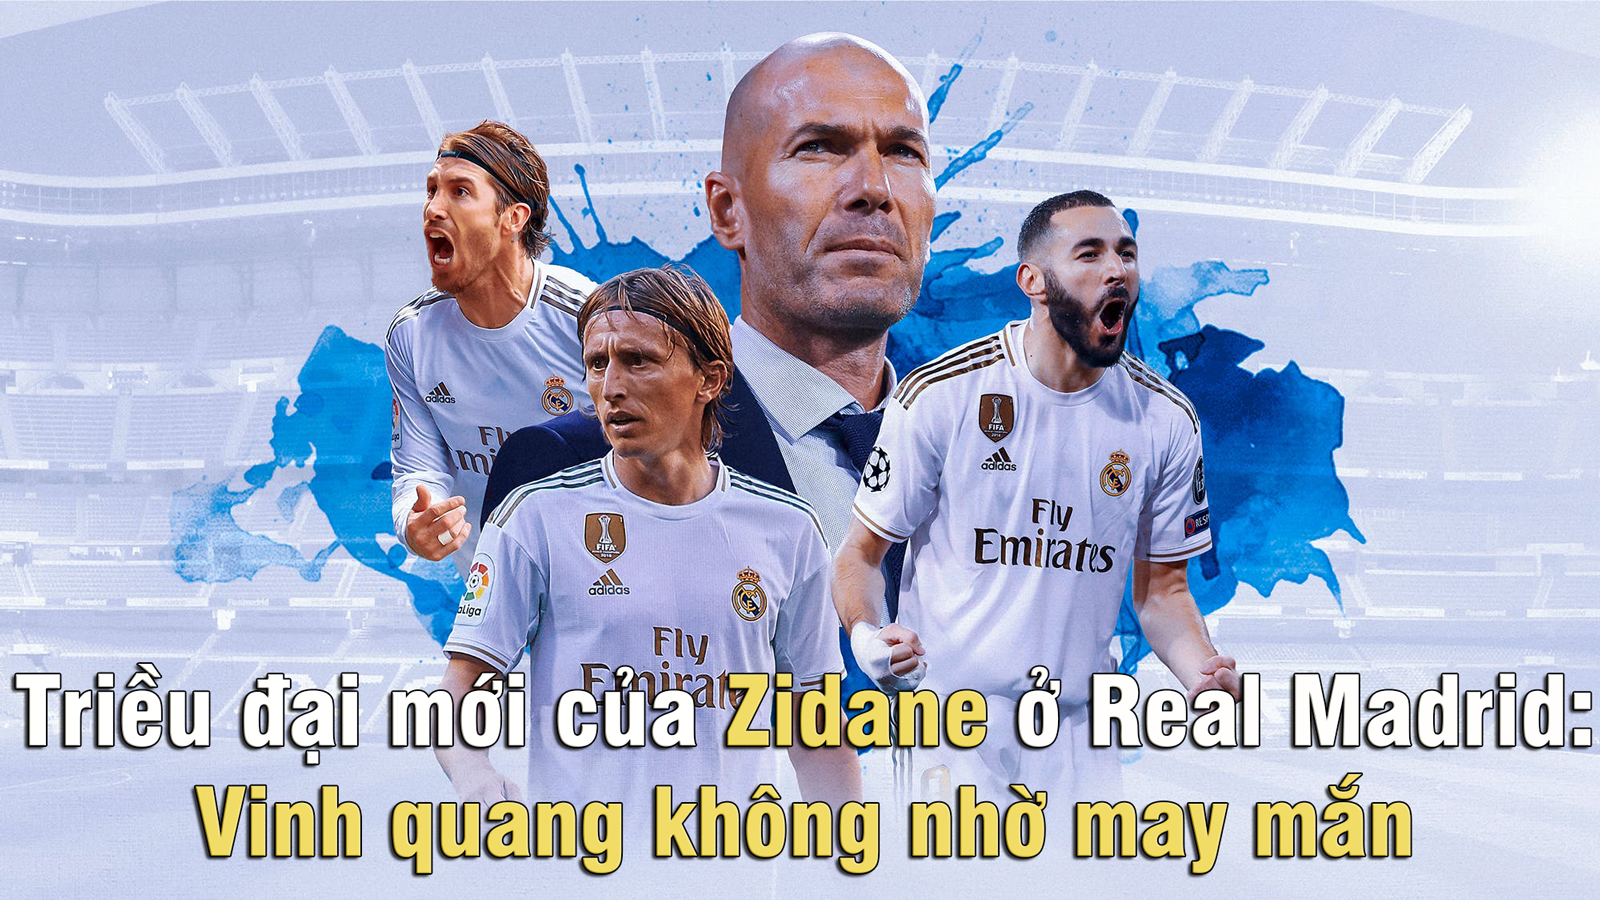 Triều đại mới của Zidane ở Real Madrid: Vinh quang không nhờ may mắn - 1